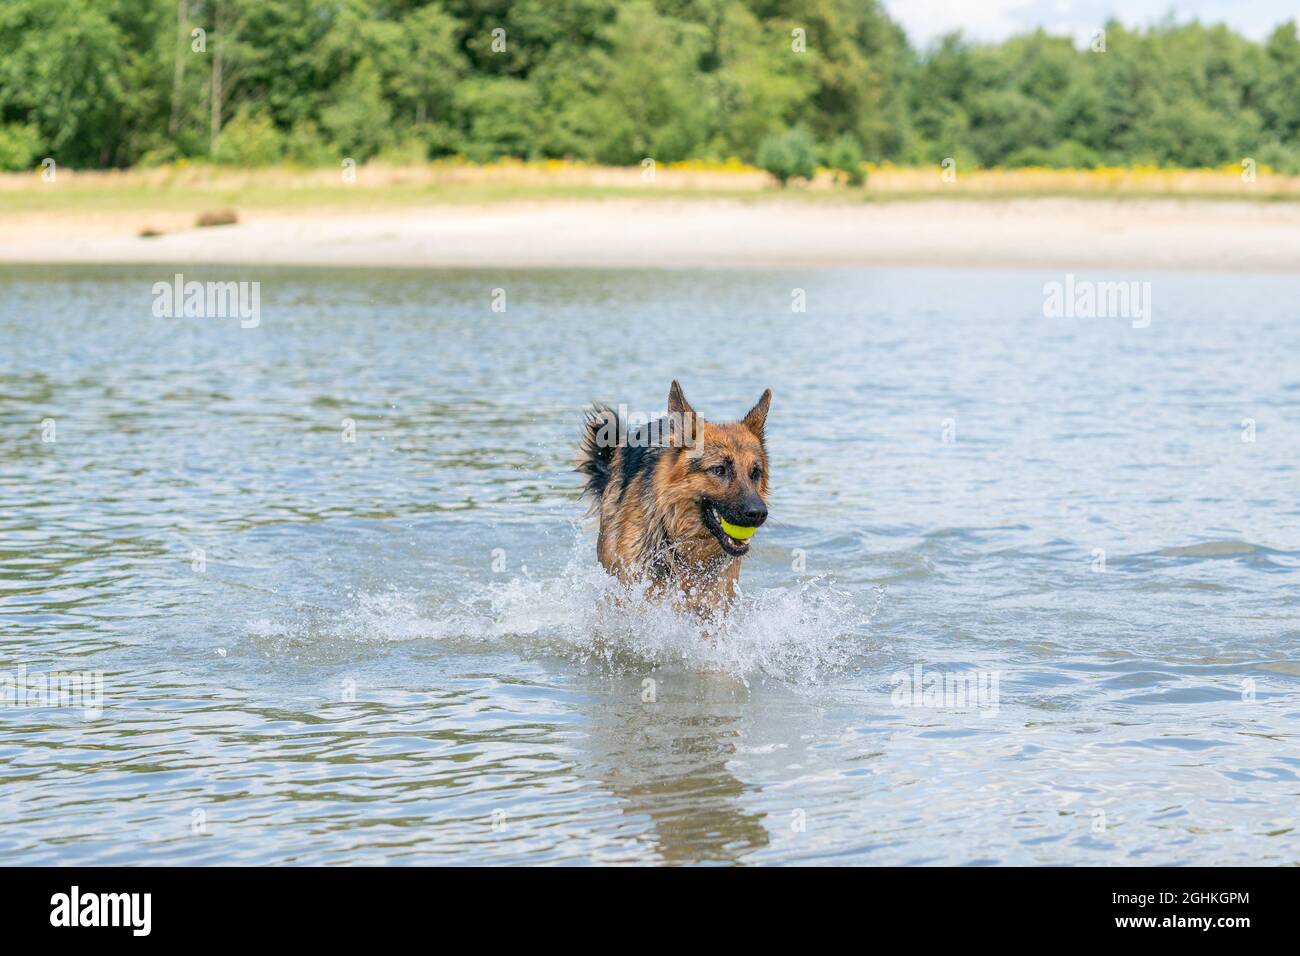 Giovane pastore tedesco felice, giocando nell'acqua. Il cane spruzza e salta felicemente nel lago. Palla da tennis gialla in bocca Foto Stock